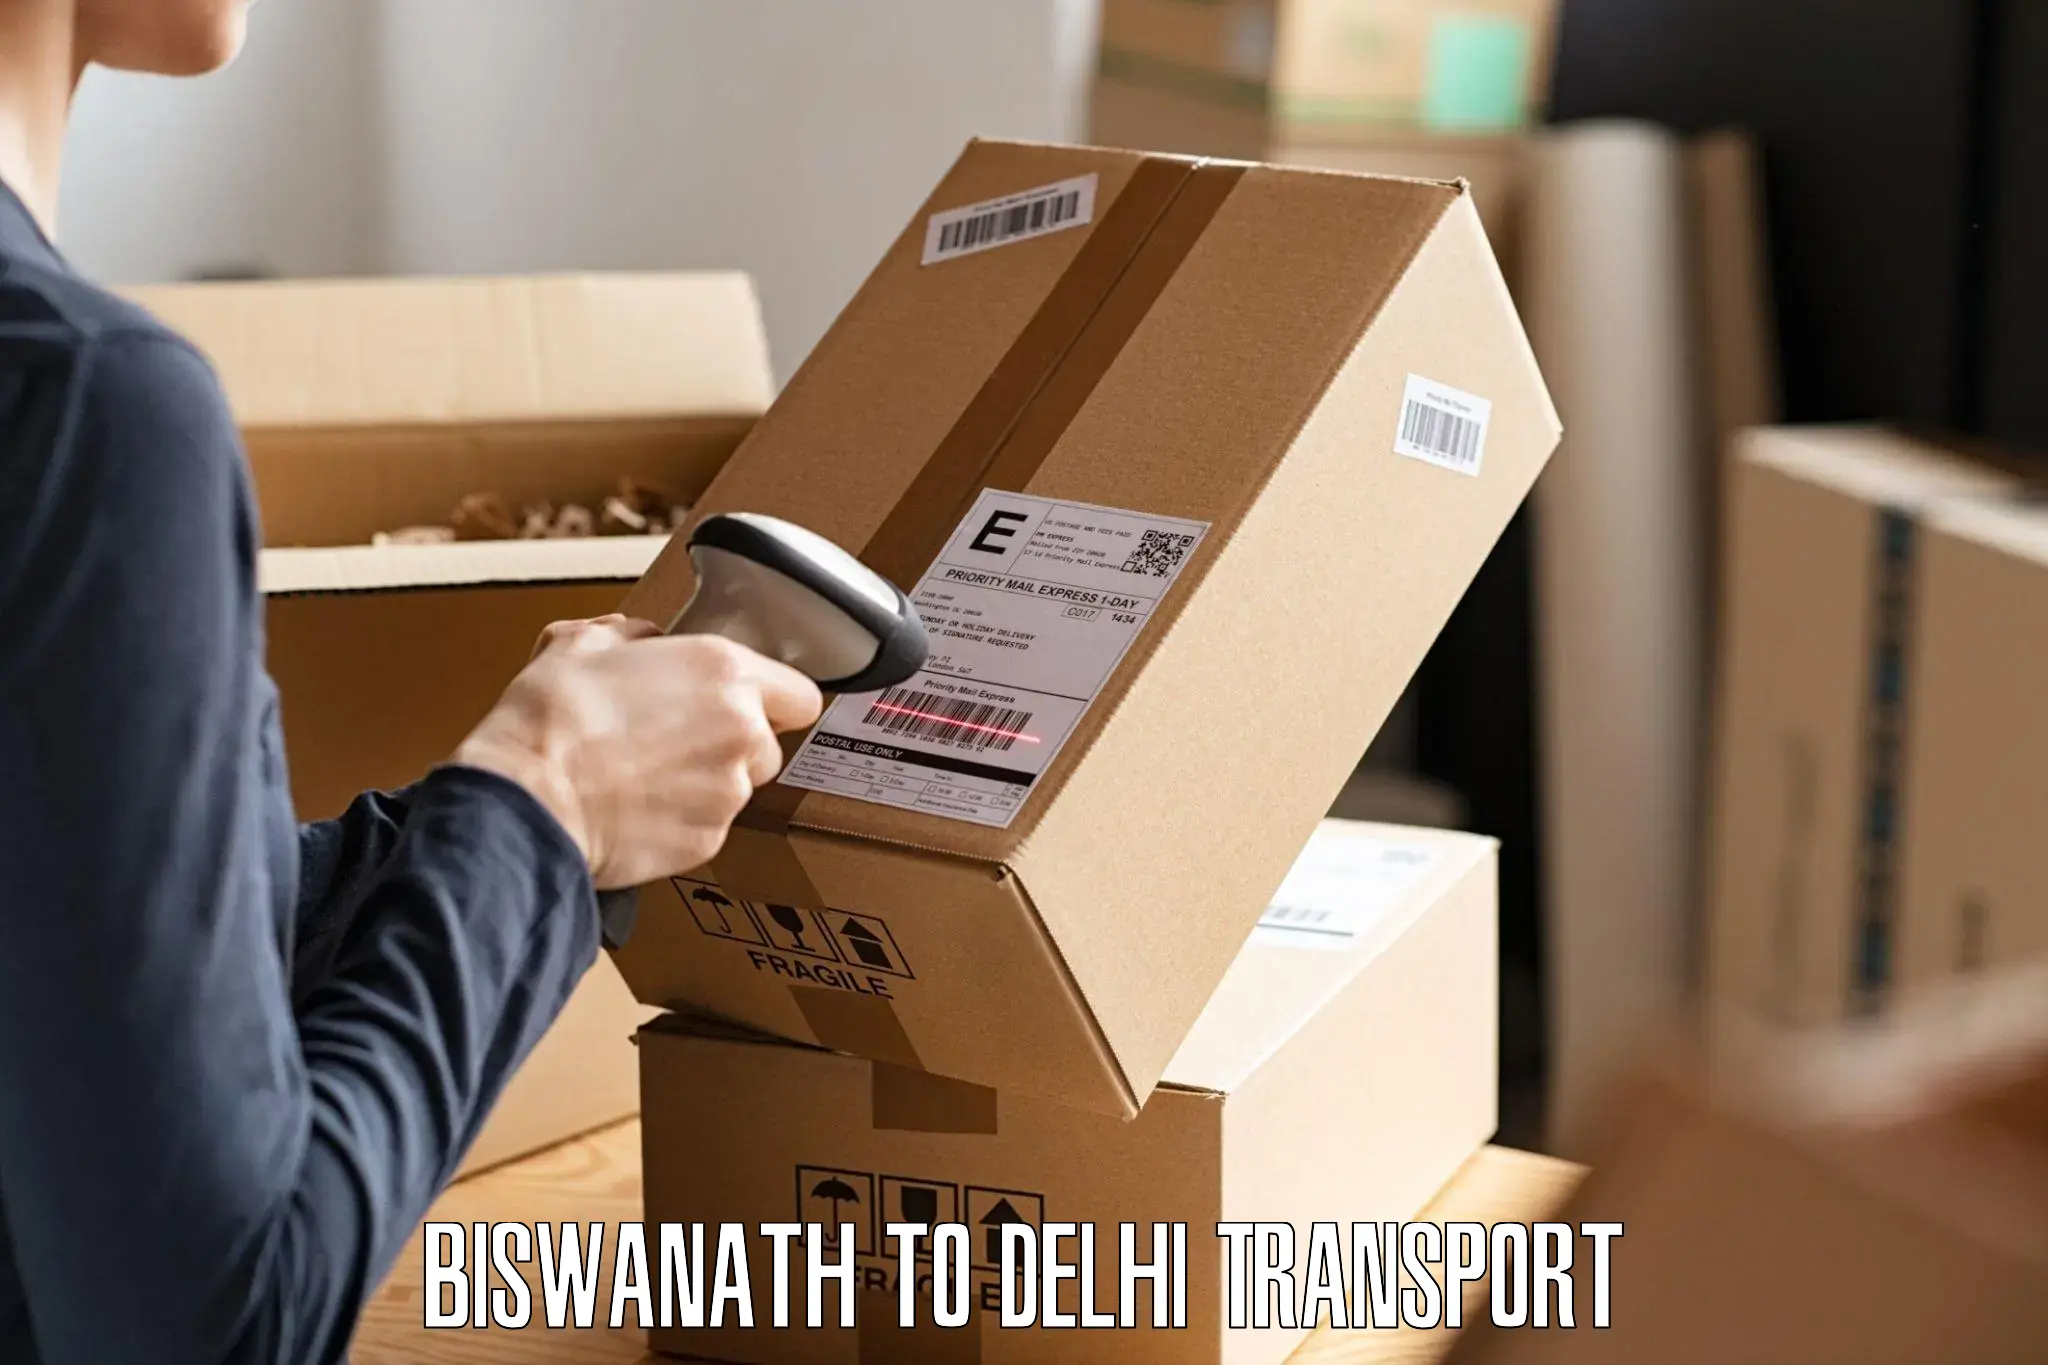 Nearest transport service in Biswanath to Delhi